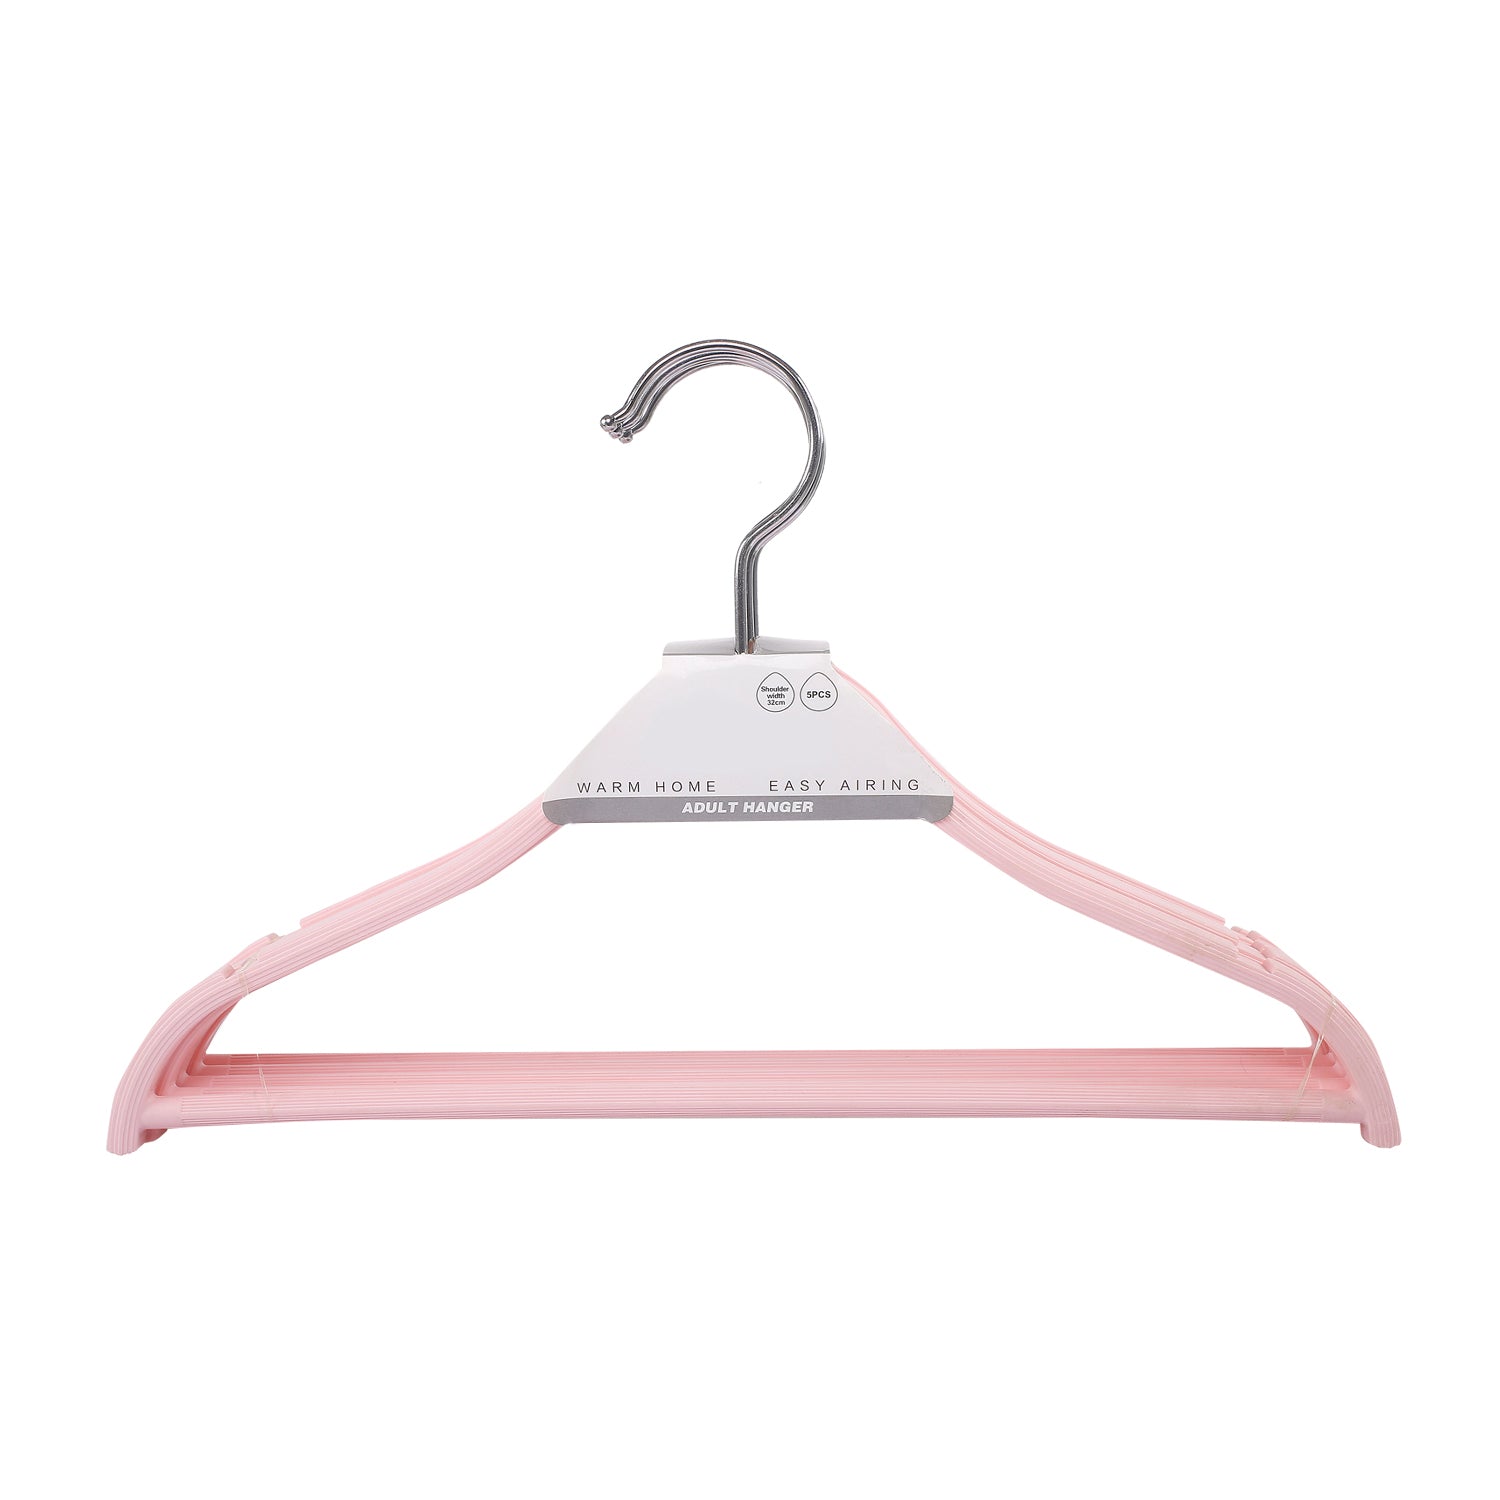 Sleek Pink Baby Hanger Set of 5 - Baby Moo